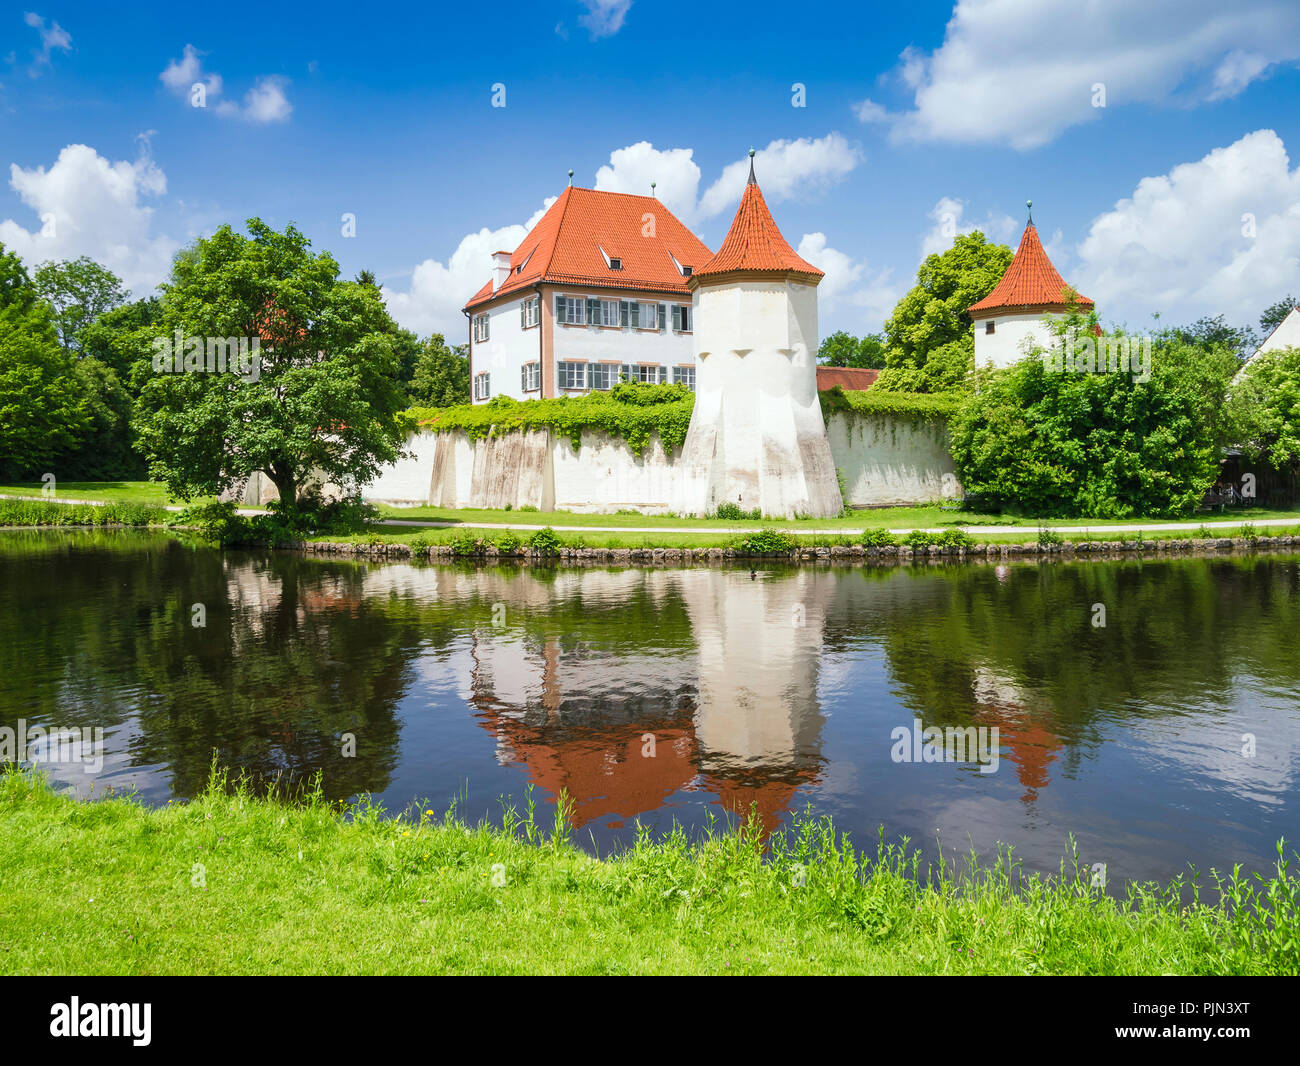 The nice castle Blood castle in Munich, Germany, Das schoene Schloss Blutenburg in Muenchen, Deutschland Stock Photo